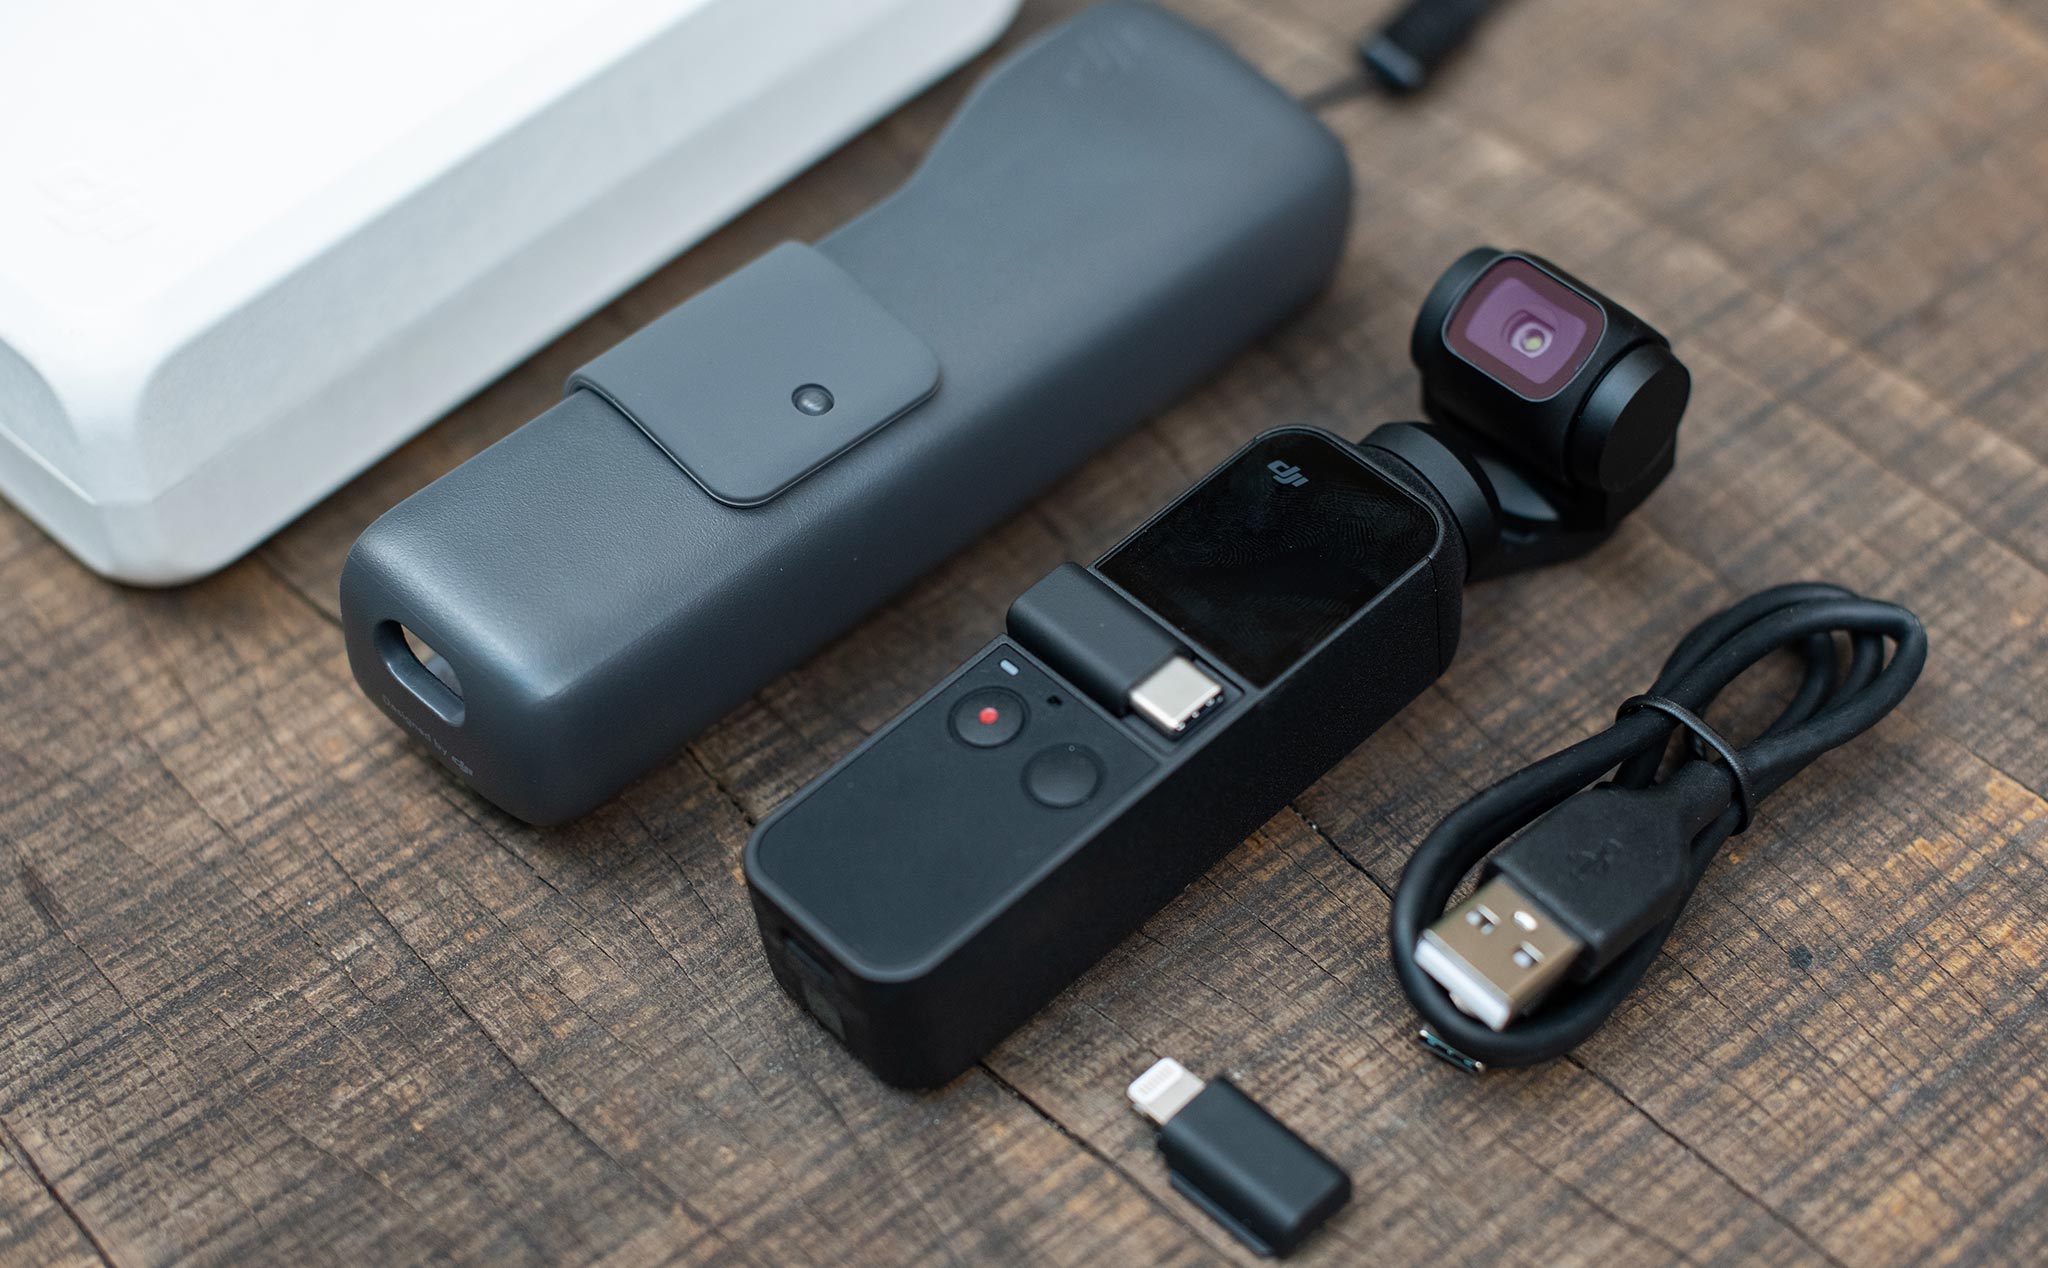 Trên tay Osmo Pocket: rất nhỏ gọn, dễ dùng, chống rung tốt, hình ảnh, video trung bình